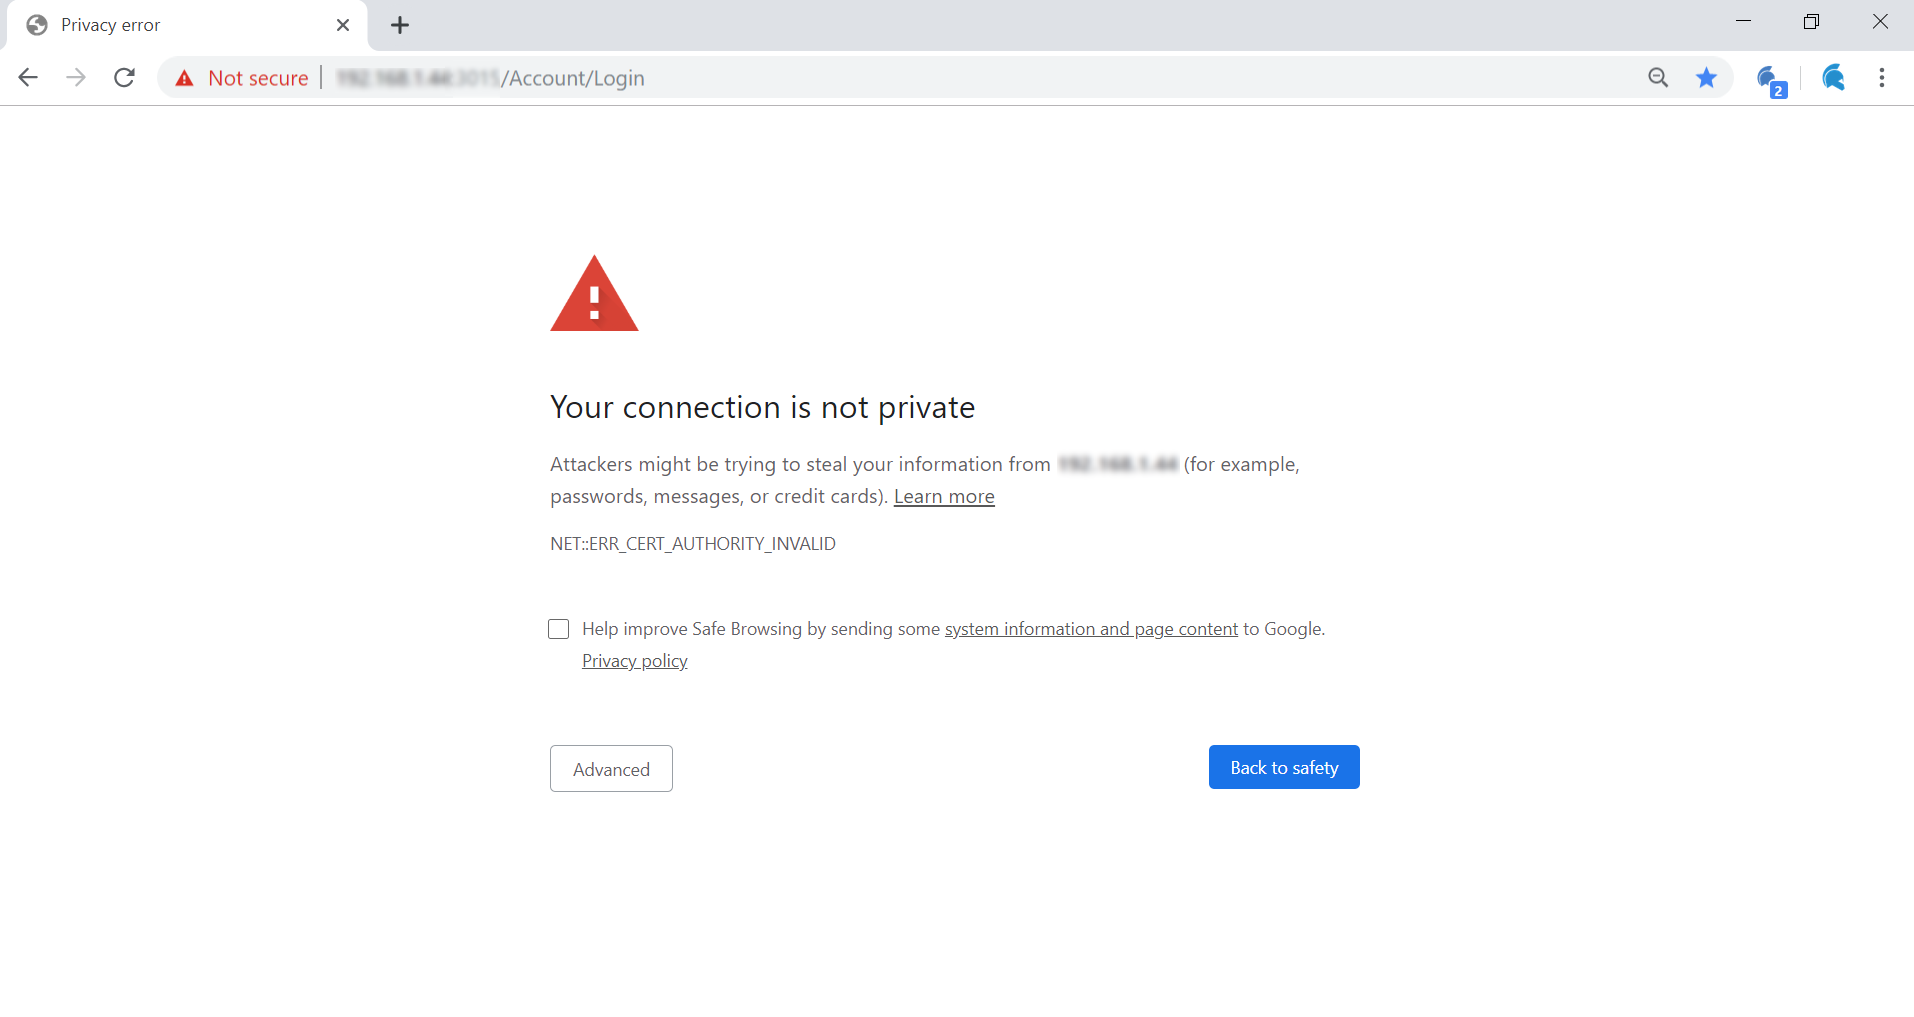 GateKeeper_Hub_Enterprise_proximity_security_warningpage.png